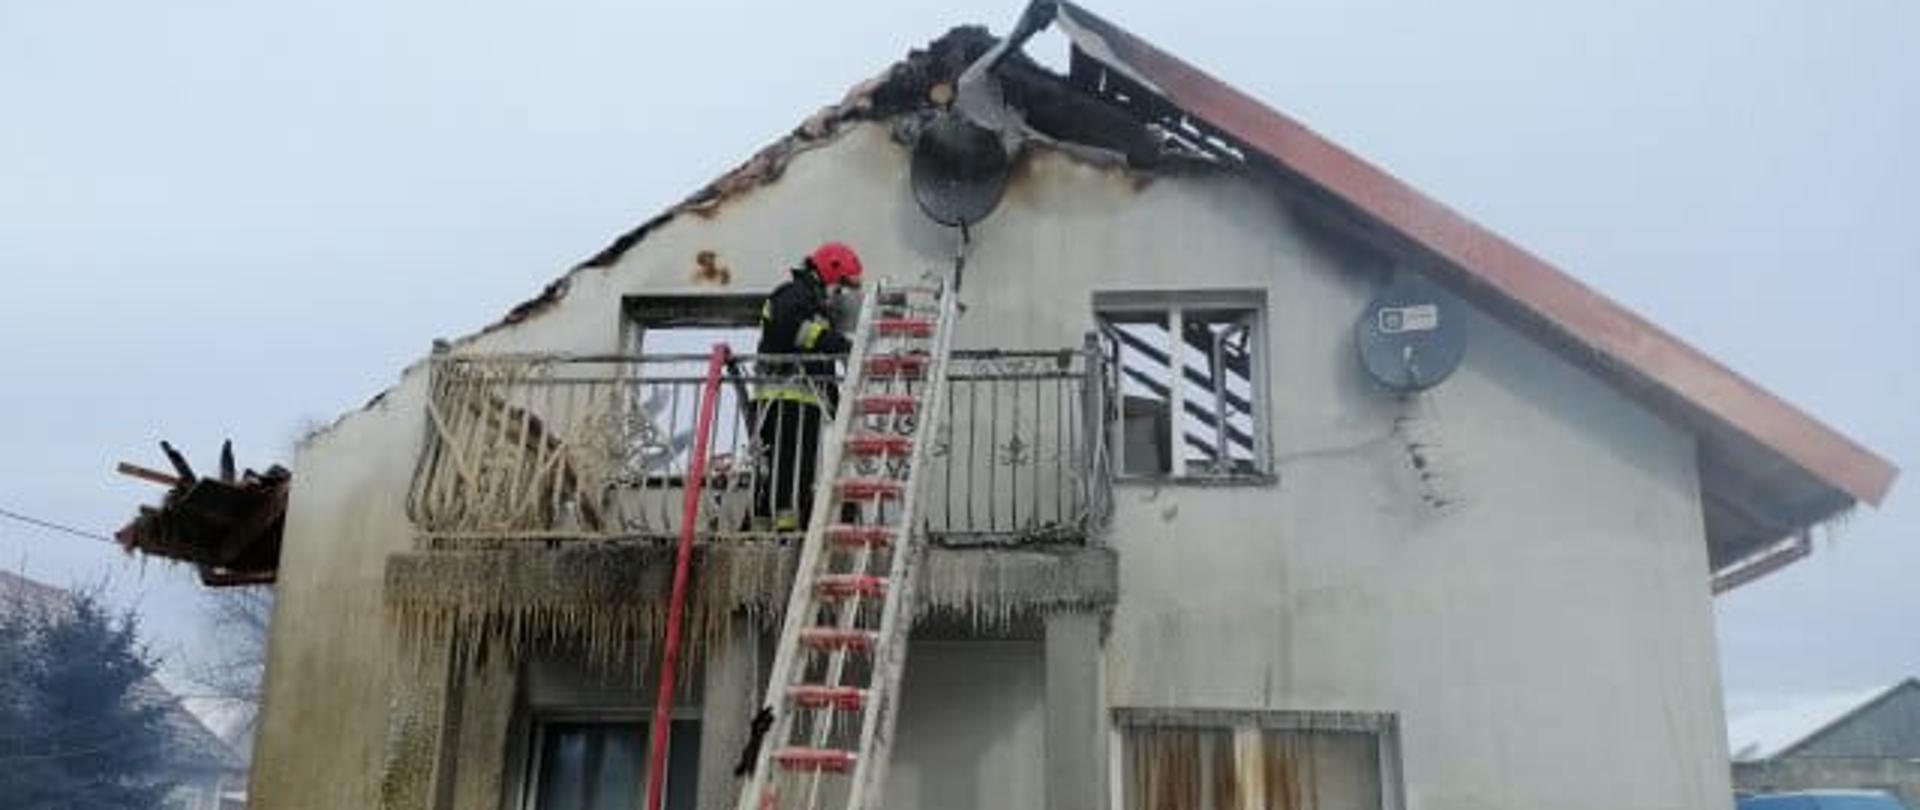 Zdjęcie przedstawia strażaka, w końcowej fazie działań ,znajdującego się na balkonie domu, w którym wybuchł pożar. Budynek ukazany od szczytowej ściany. Zauważyć można zniszczony przez ogień dach. Do balkonu przystawiona jest drabina strażacka a obok niej znajduję się zwisający odcinek węża tłocznego. 